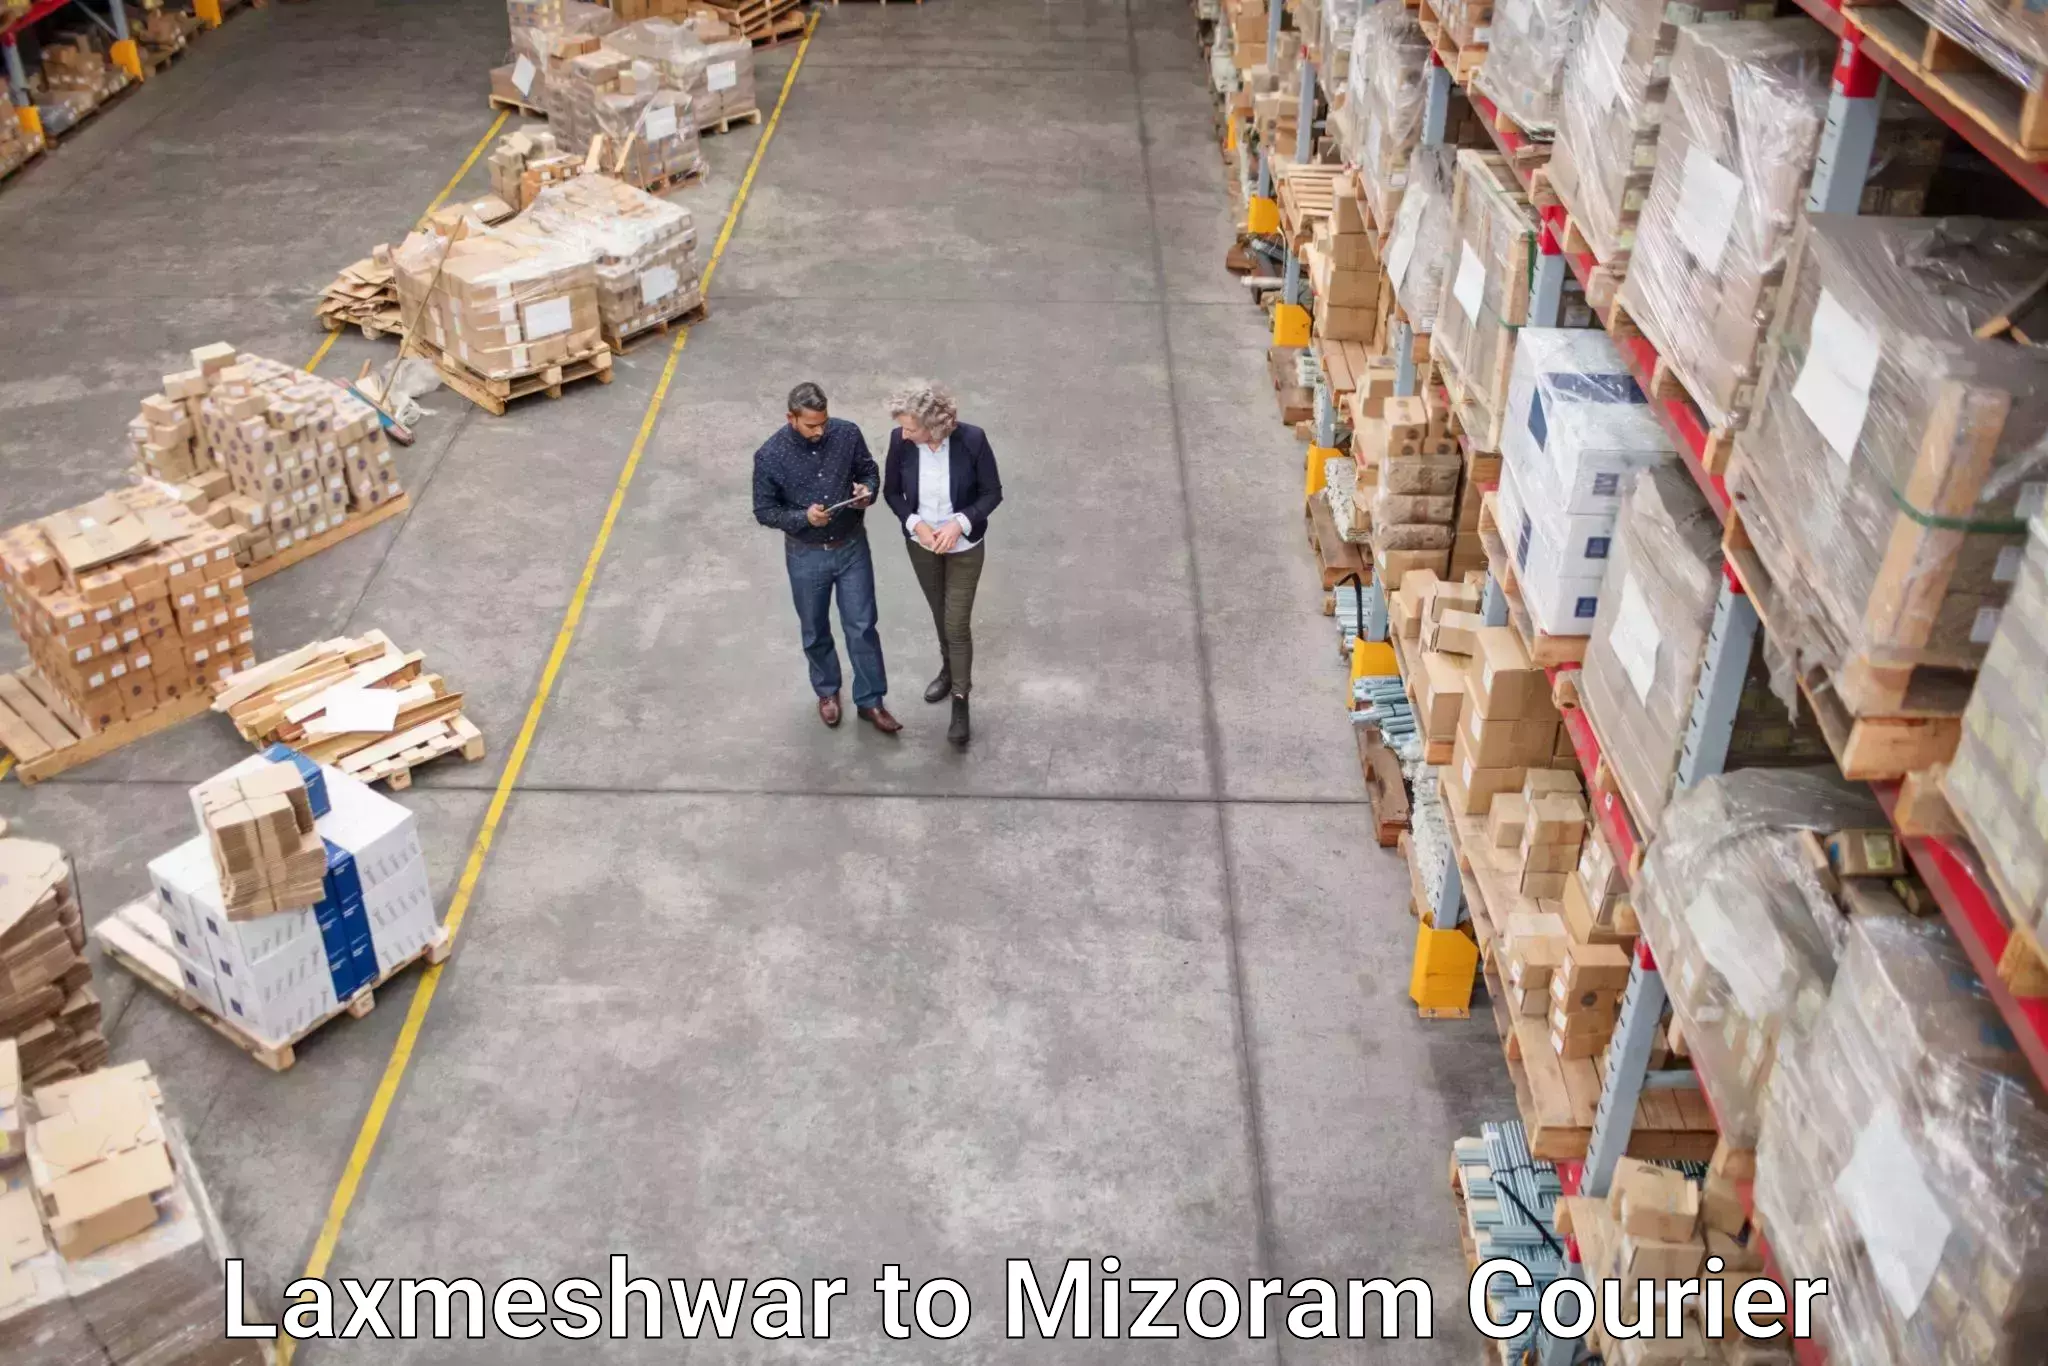 Express shipping Laxmeshwar to Mizoram